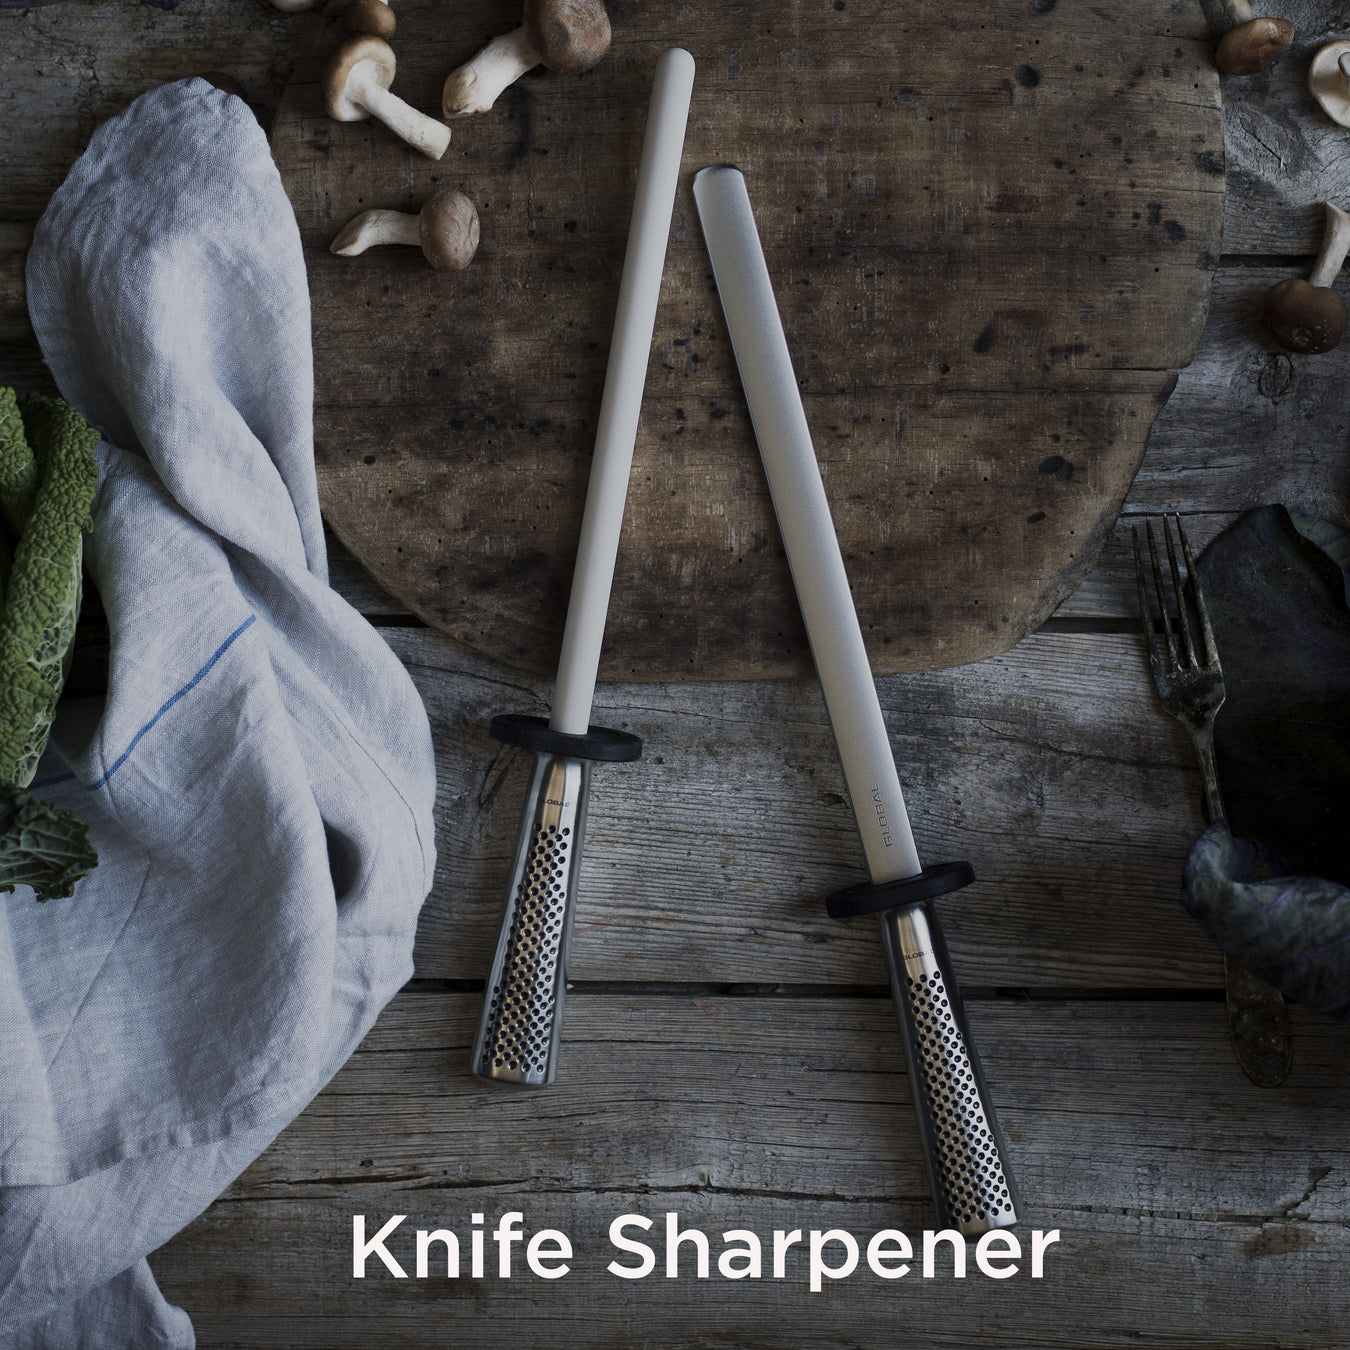 Global Knife Sharpener